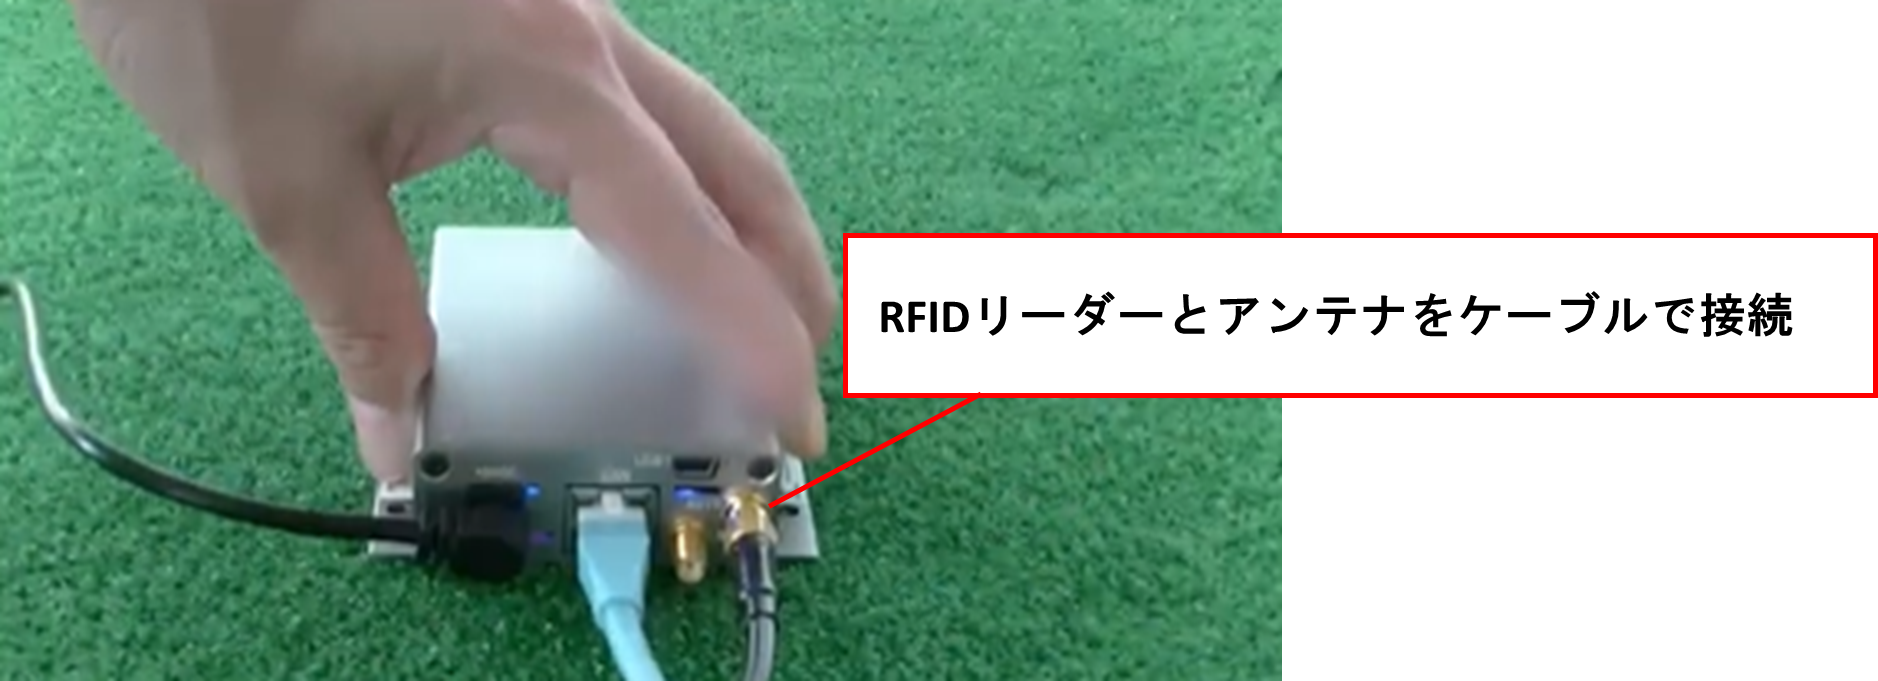 RFIDリーダーとアンテナをケーブルで接続した図